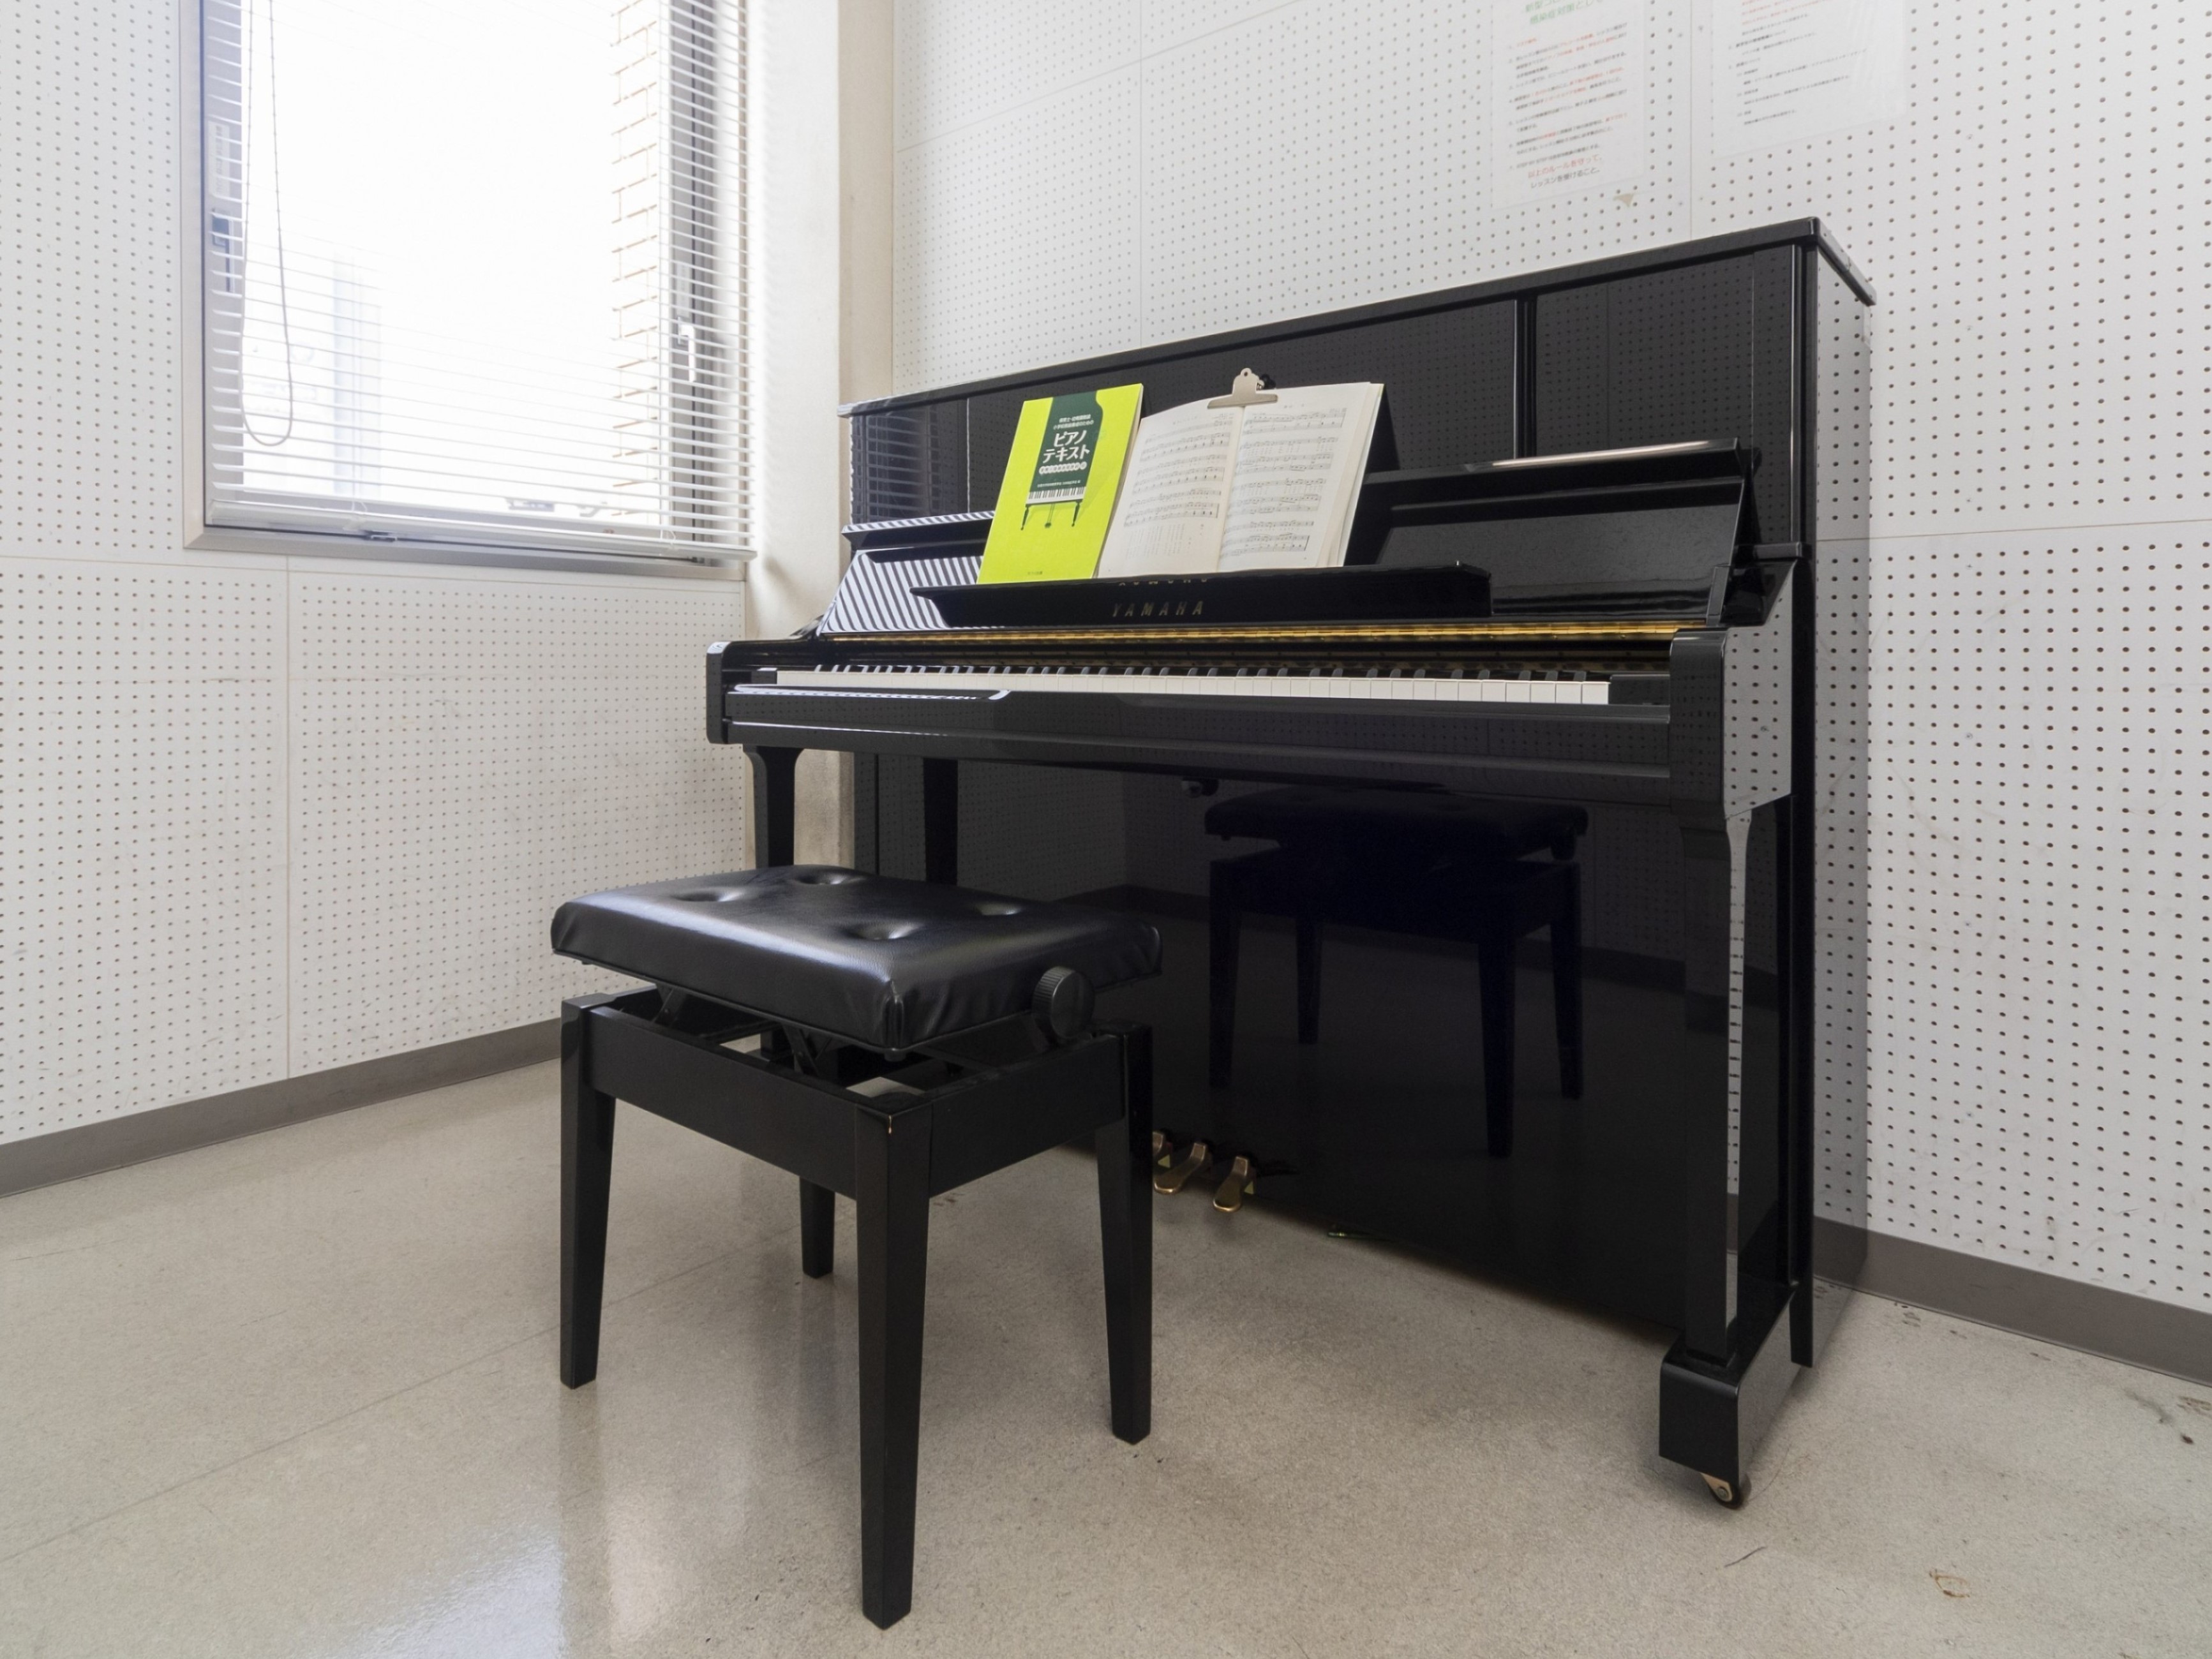 【ピアノ練習室】防音性の高い個室の練習室は授業での個別指導のほか、放課後や授業の空き時間を利用して自由に使えます。